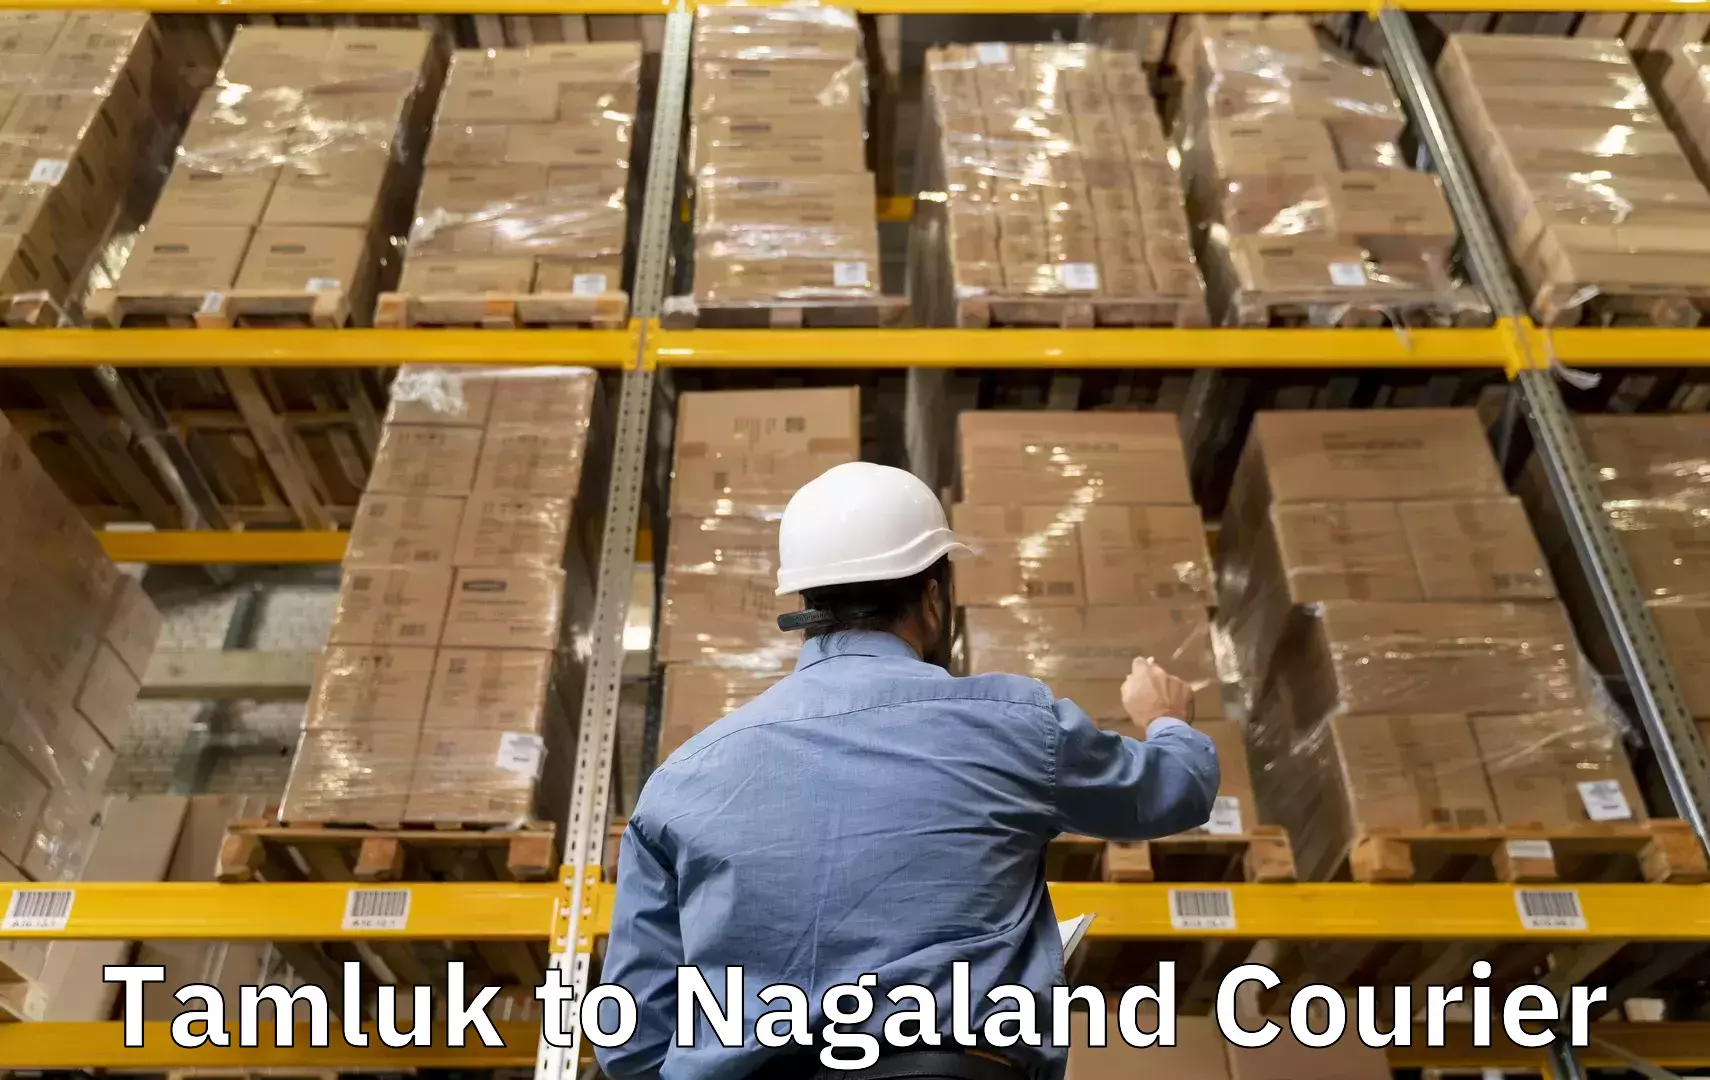 Luggage transport service Tamluk to Nagaland